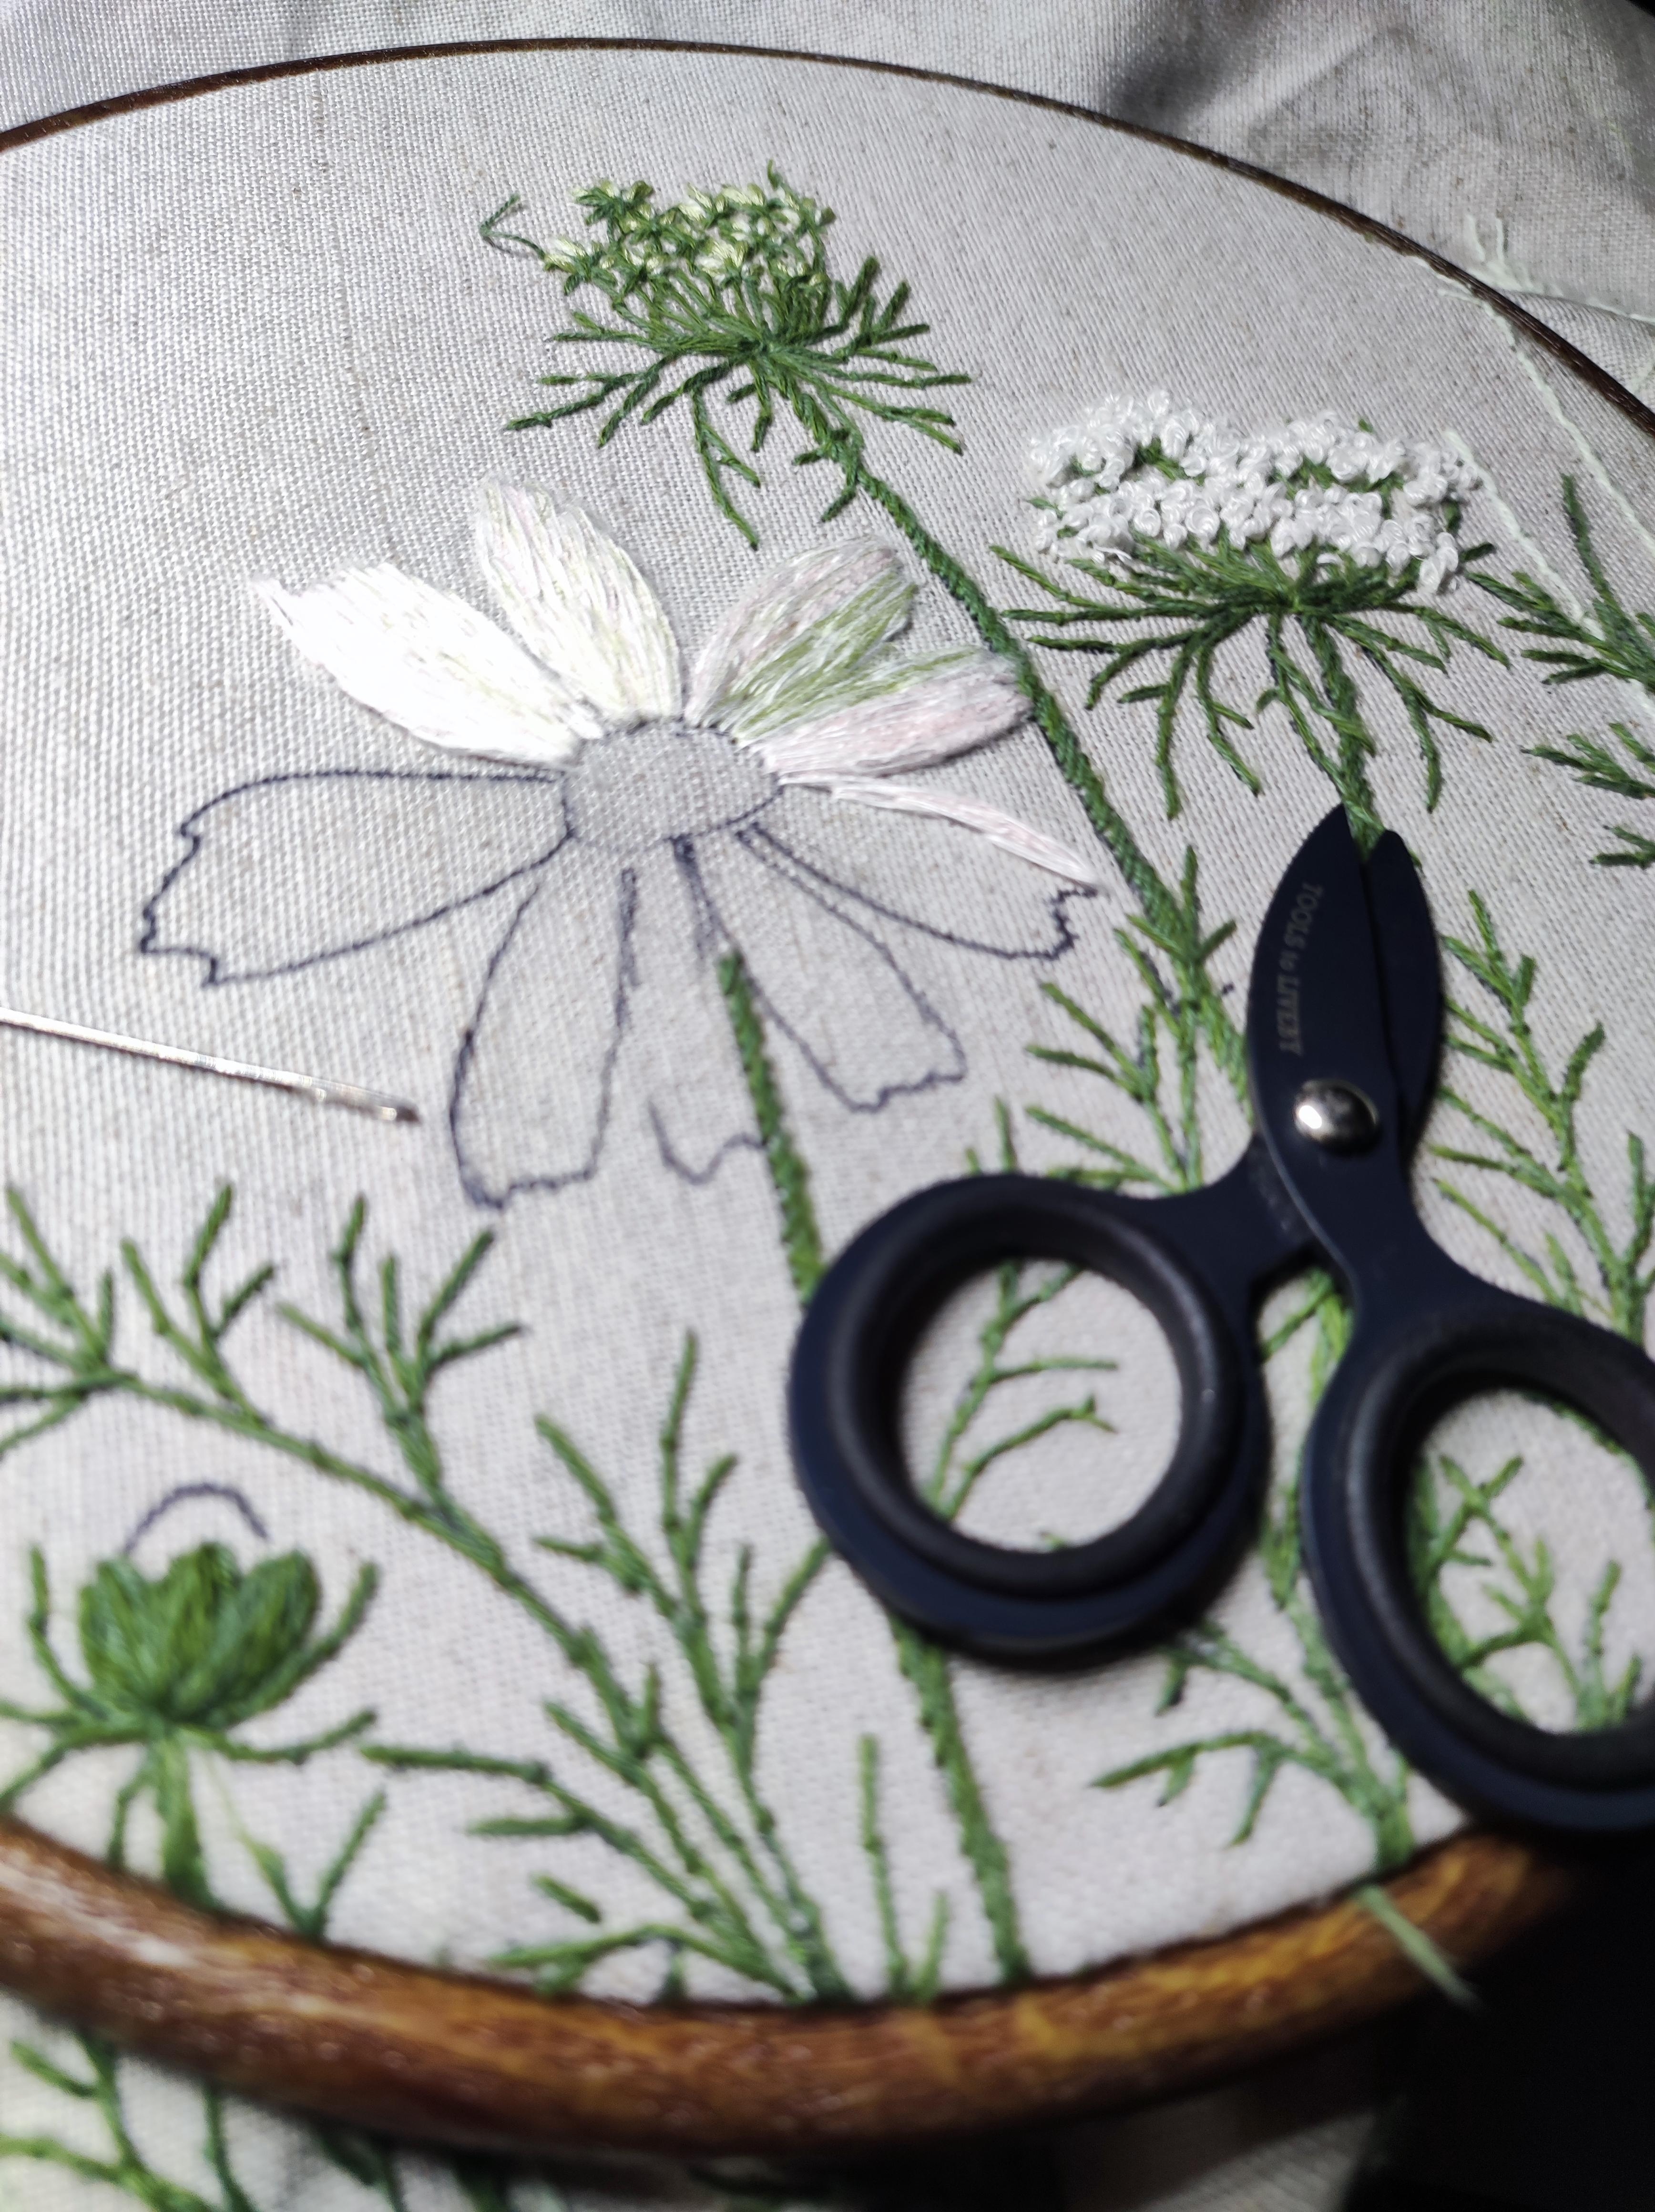 Embroidery in progress, es wird ein rundes Kissen 🌿🔆🌱🫶
#handembroidery #leinenkissen #stickenistmeinyoga ....